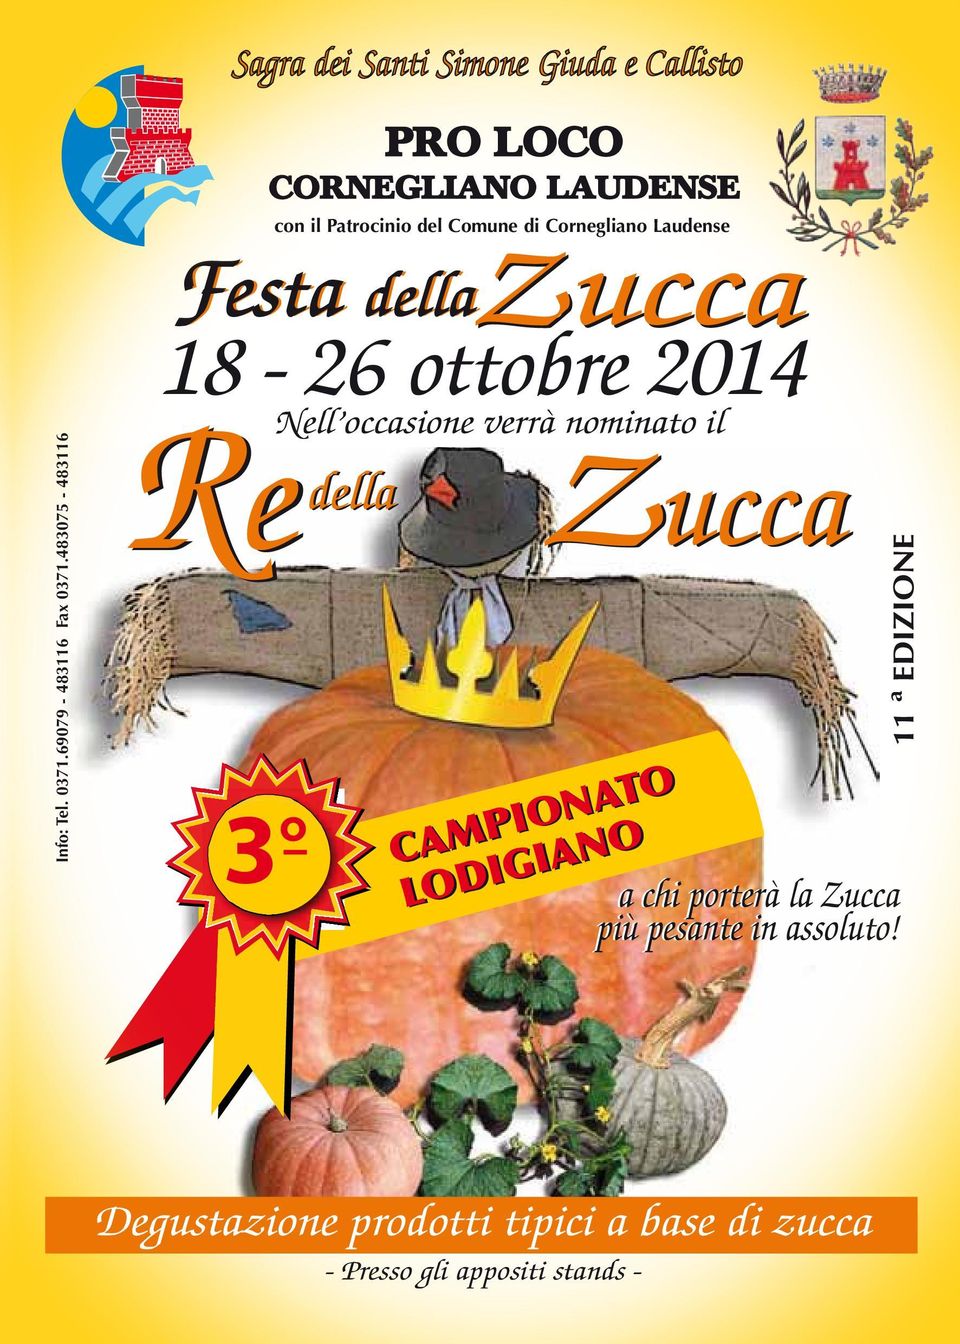 Patrocinio del Comune di Cornegliano Laudense Festa della Zucca 18-26 ottobre 2014 3 Zucca CAMPIONATO